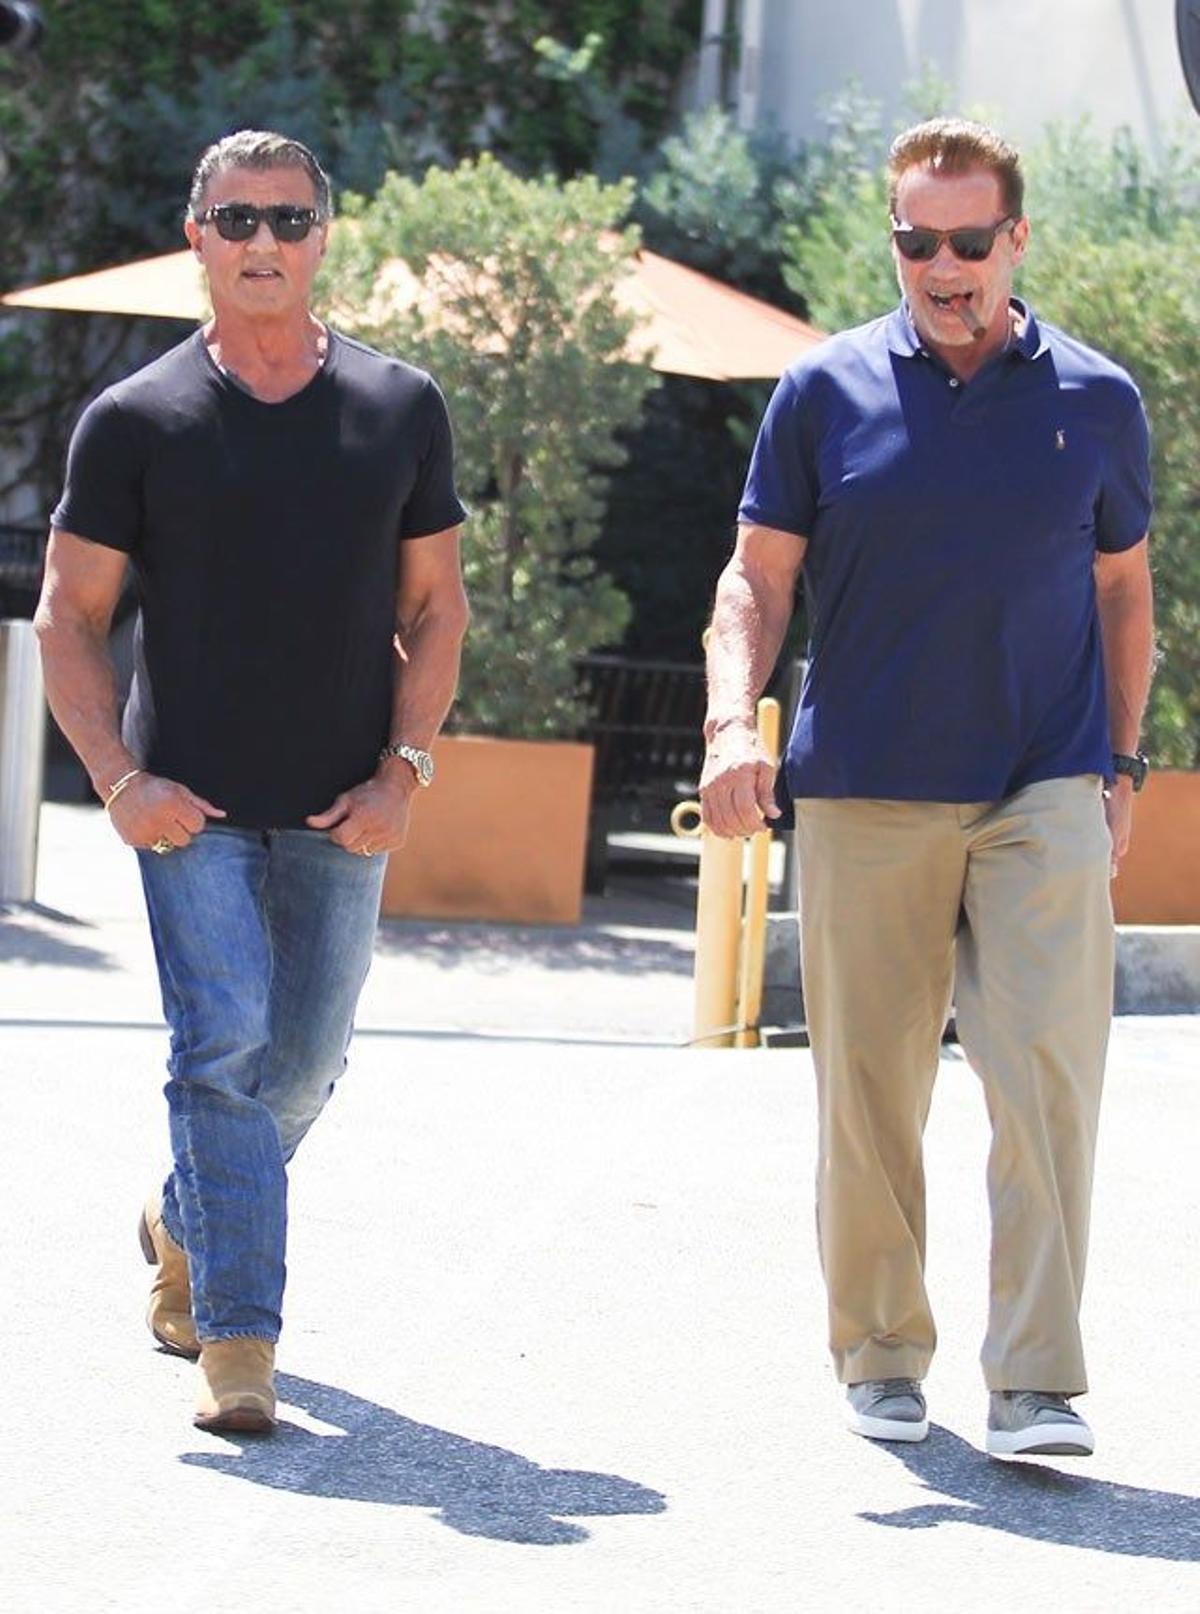 Reencuentro de viejas glorias: Schwarzenegger y Stallone salen a comer juntos